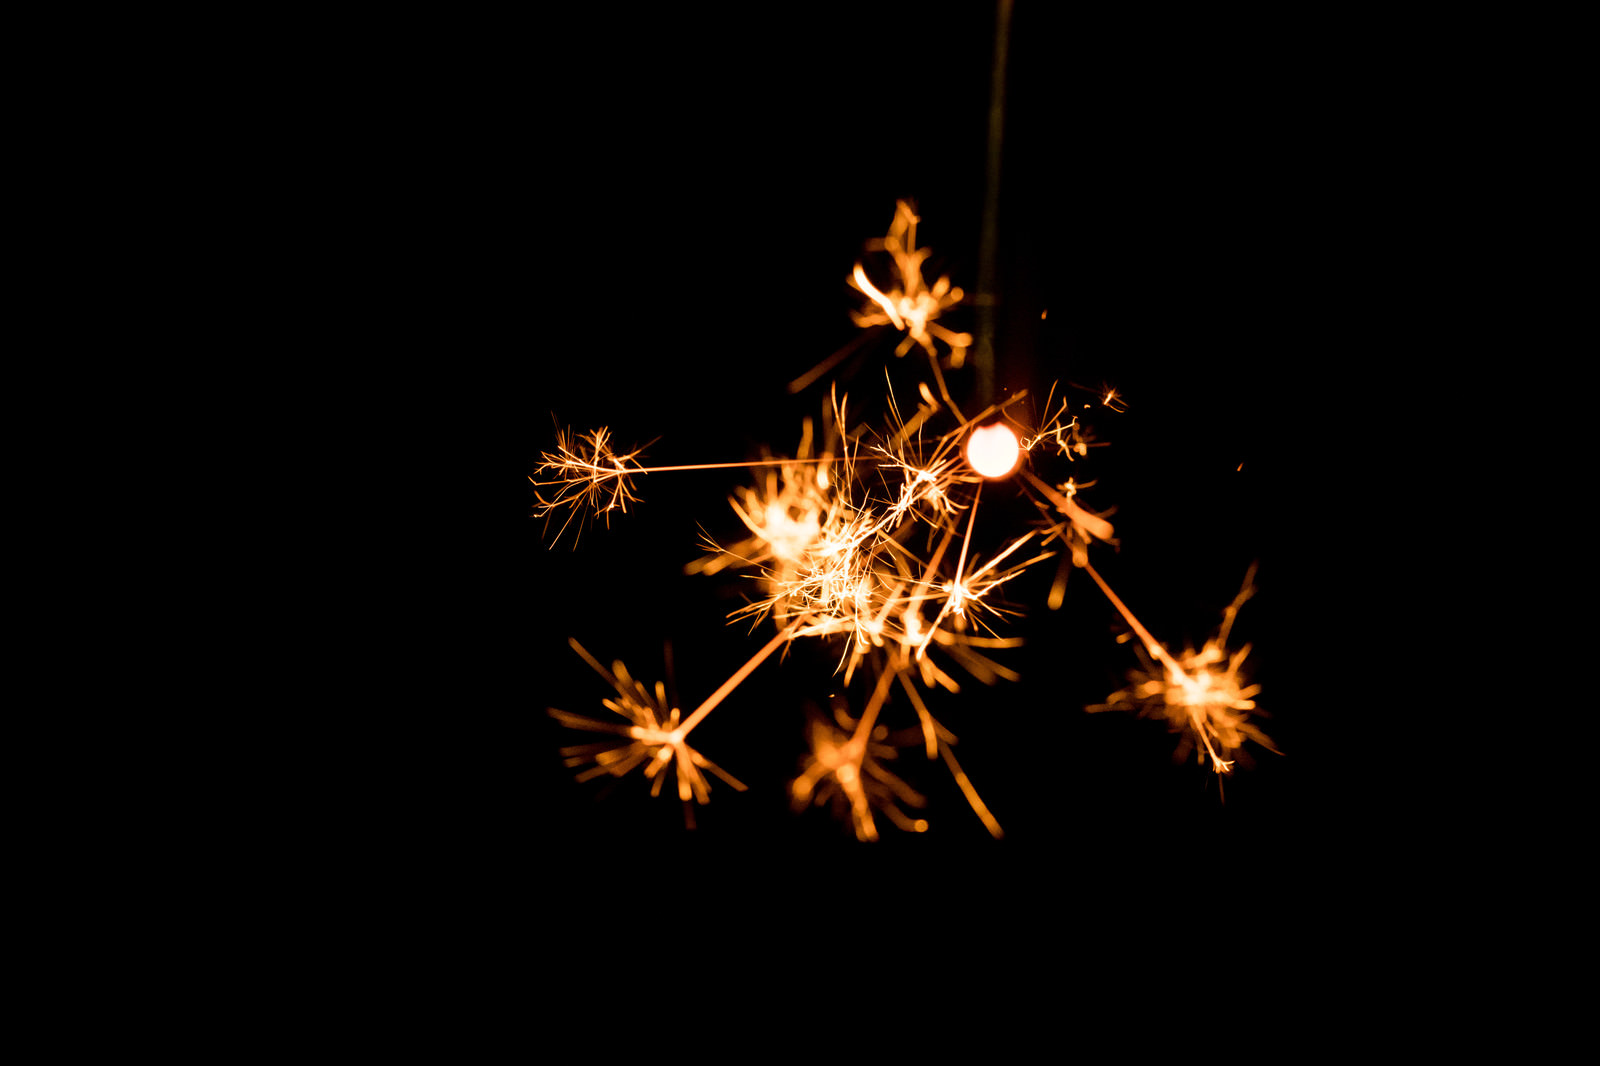 「線香花火の儚い火花 | フリー素材のぱくたそ」の写真